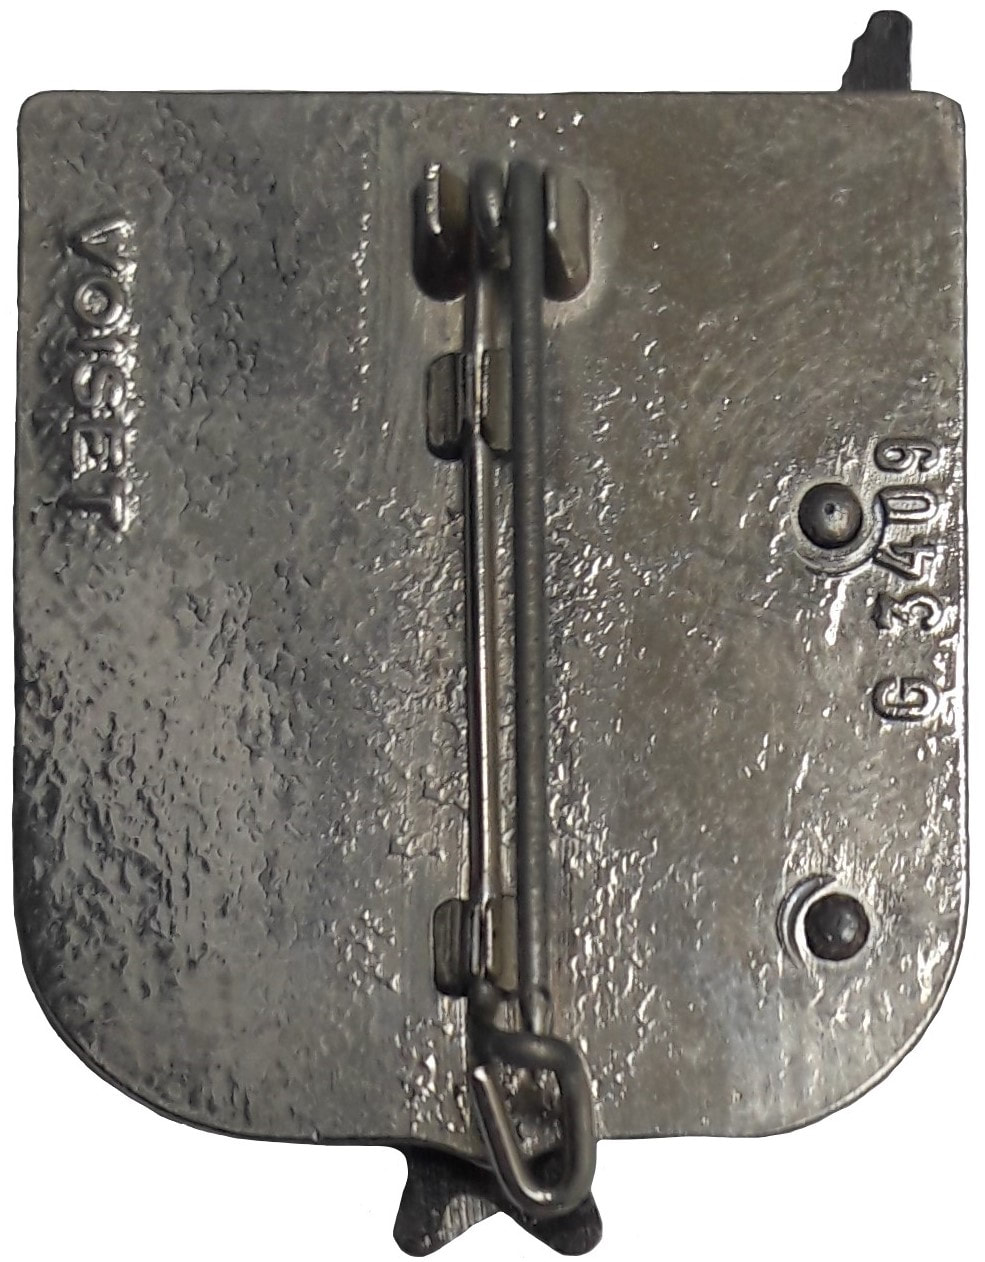 Dos insigne 3e RHC, type 2 : VOISET, dos lisse, plat et argenté, avec monture épingle à attache fixe. Alat.fr